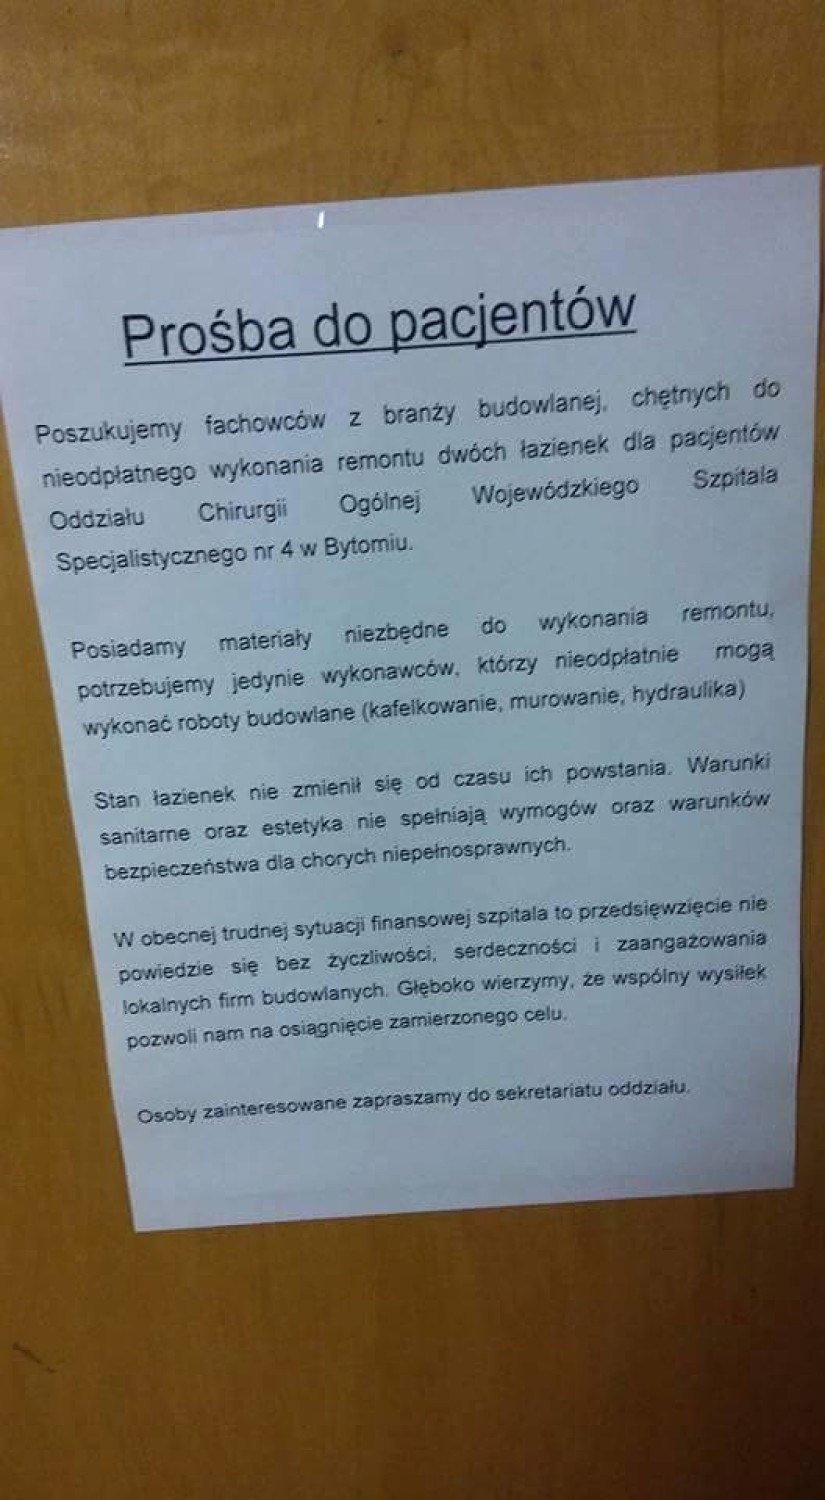 Wojewódzki Szpital Specjalistyczny nr 4 w Bytomiu...